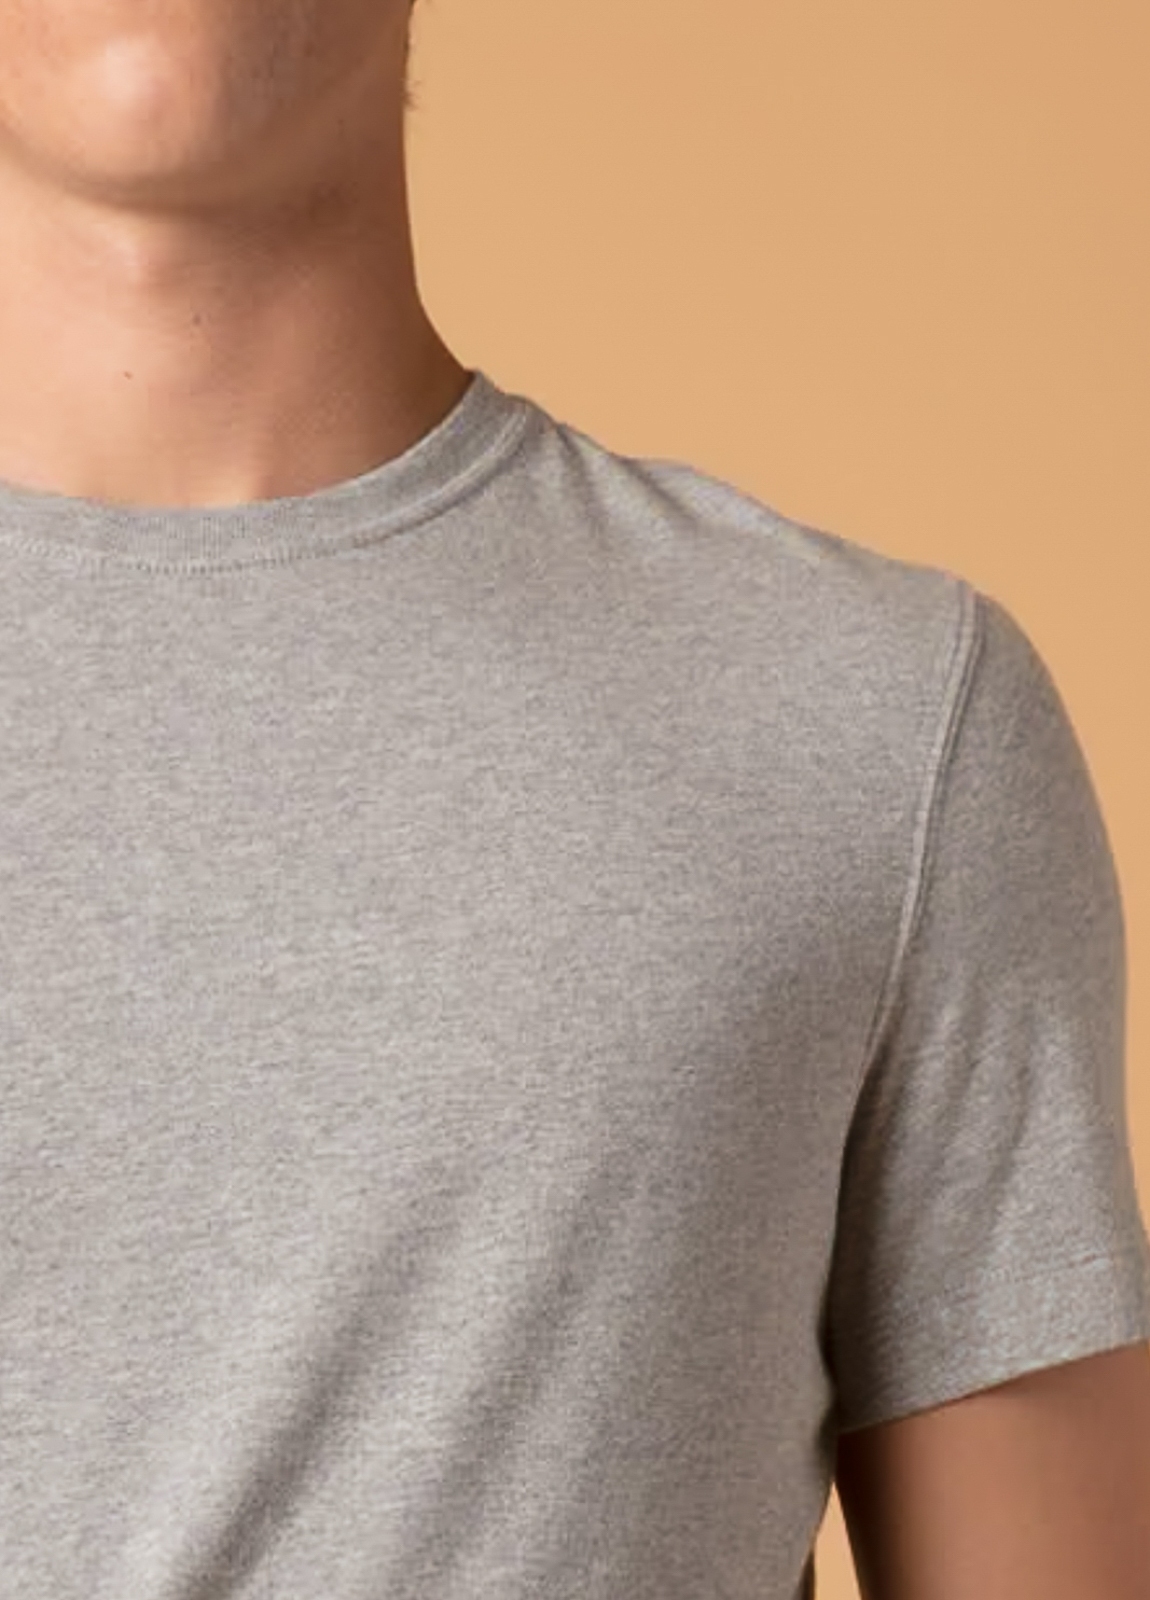 Camiseta manga corta FUREST COLECCIÓN gris - Ítem1